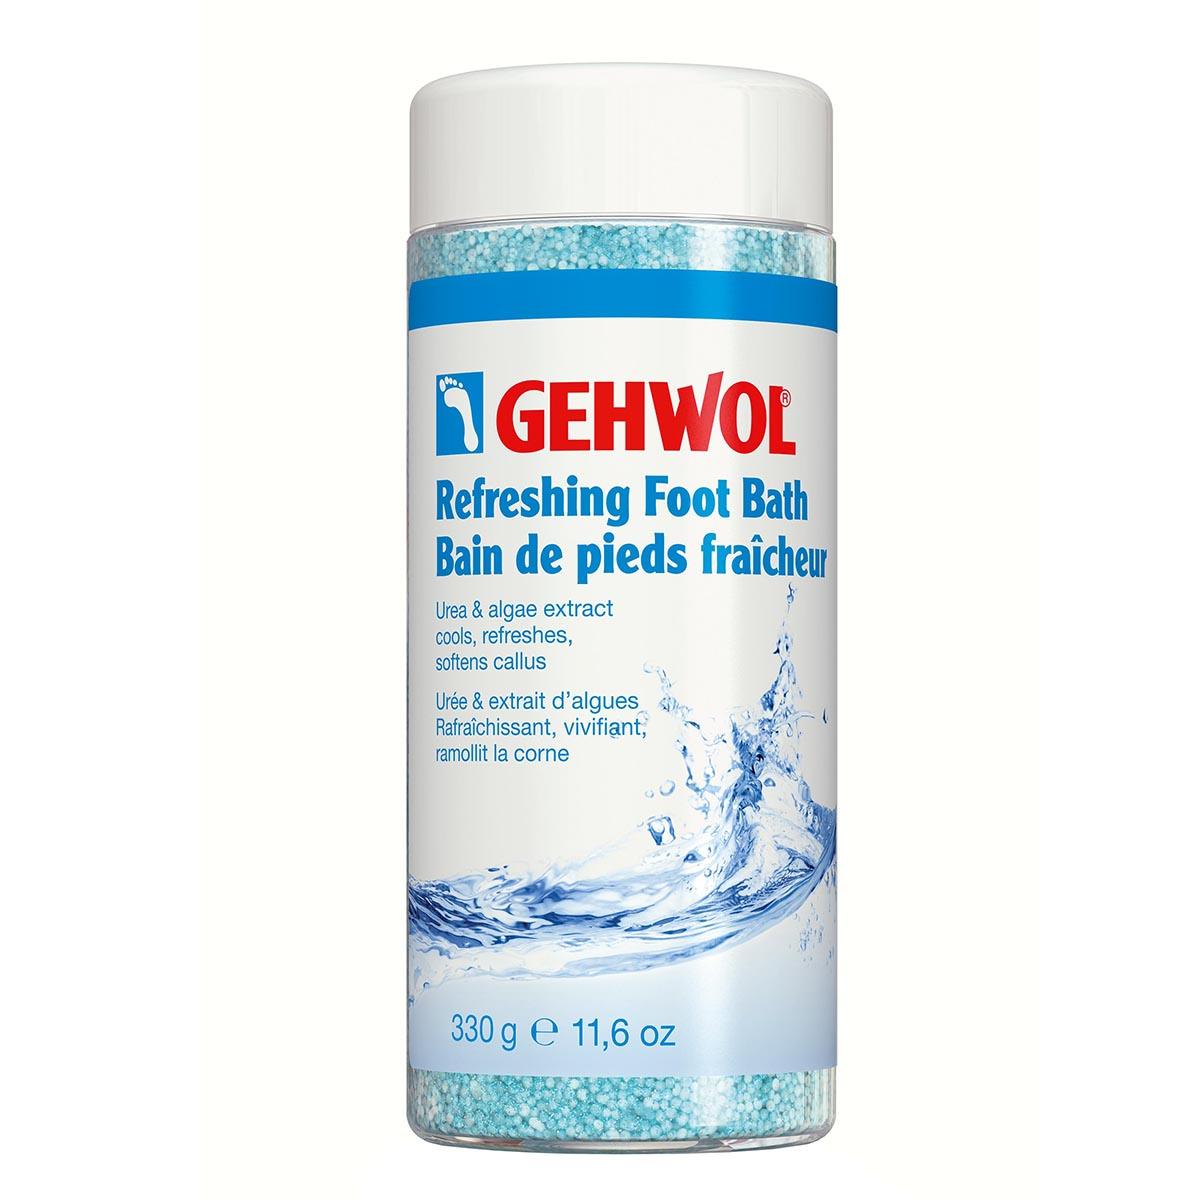 Gehwol Refreshing Foot Bath | Fotpleie | Gehwol | JK SHOP | JK Barber og herre frisør | Lavepriser | Best